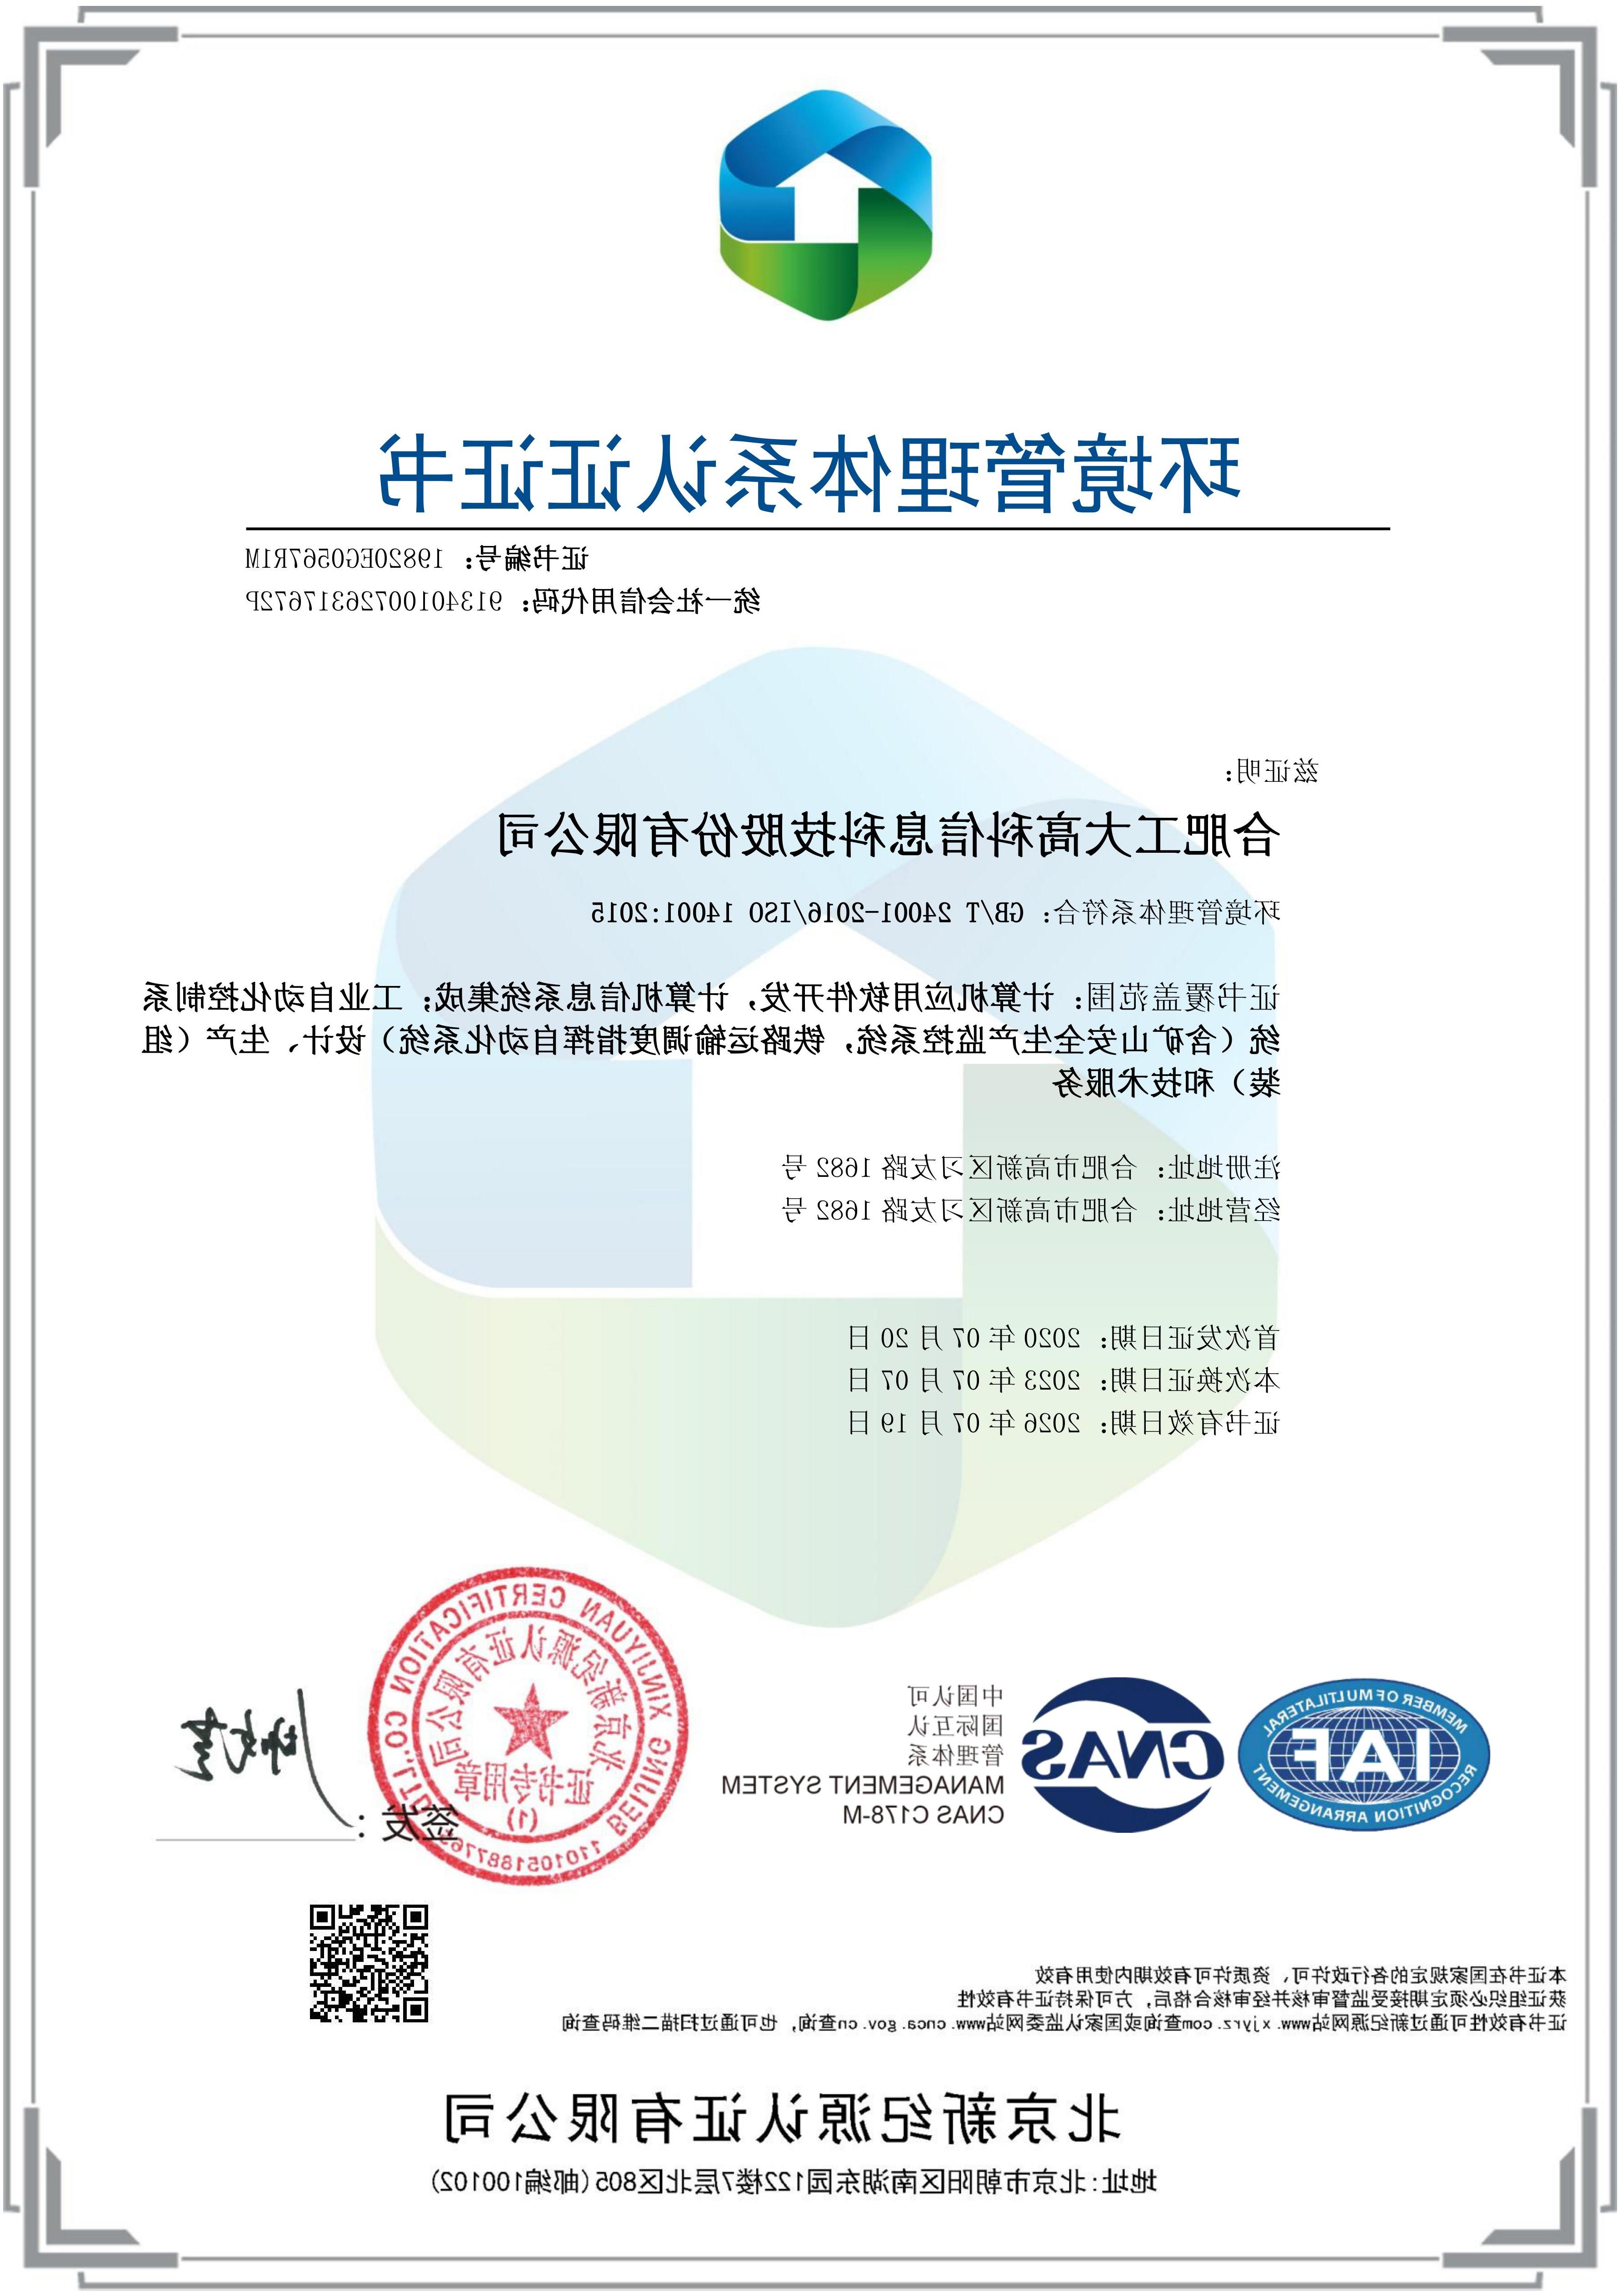 A36 环境体系证书-中文版